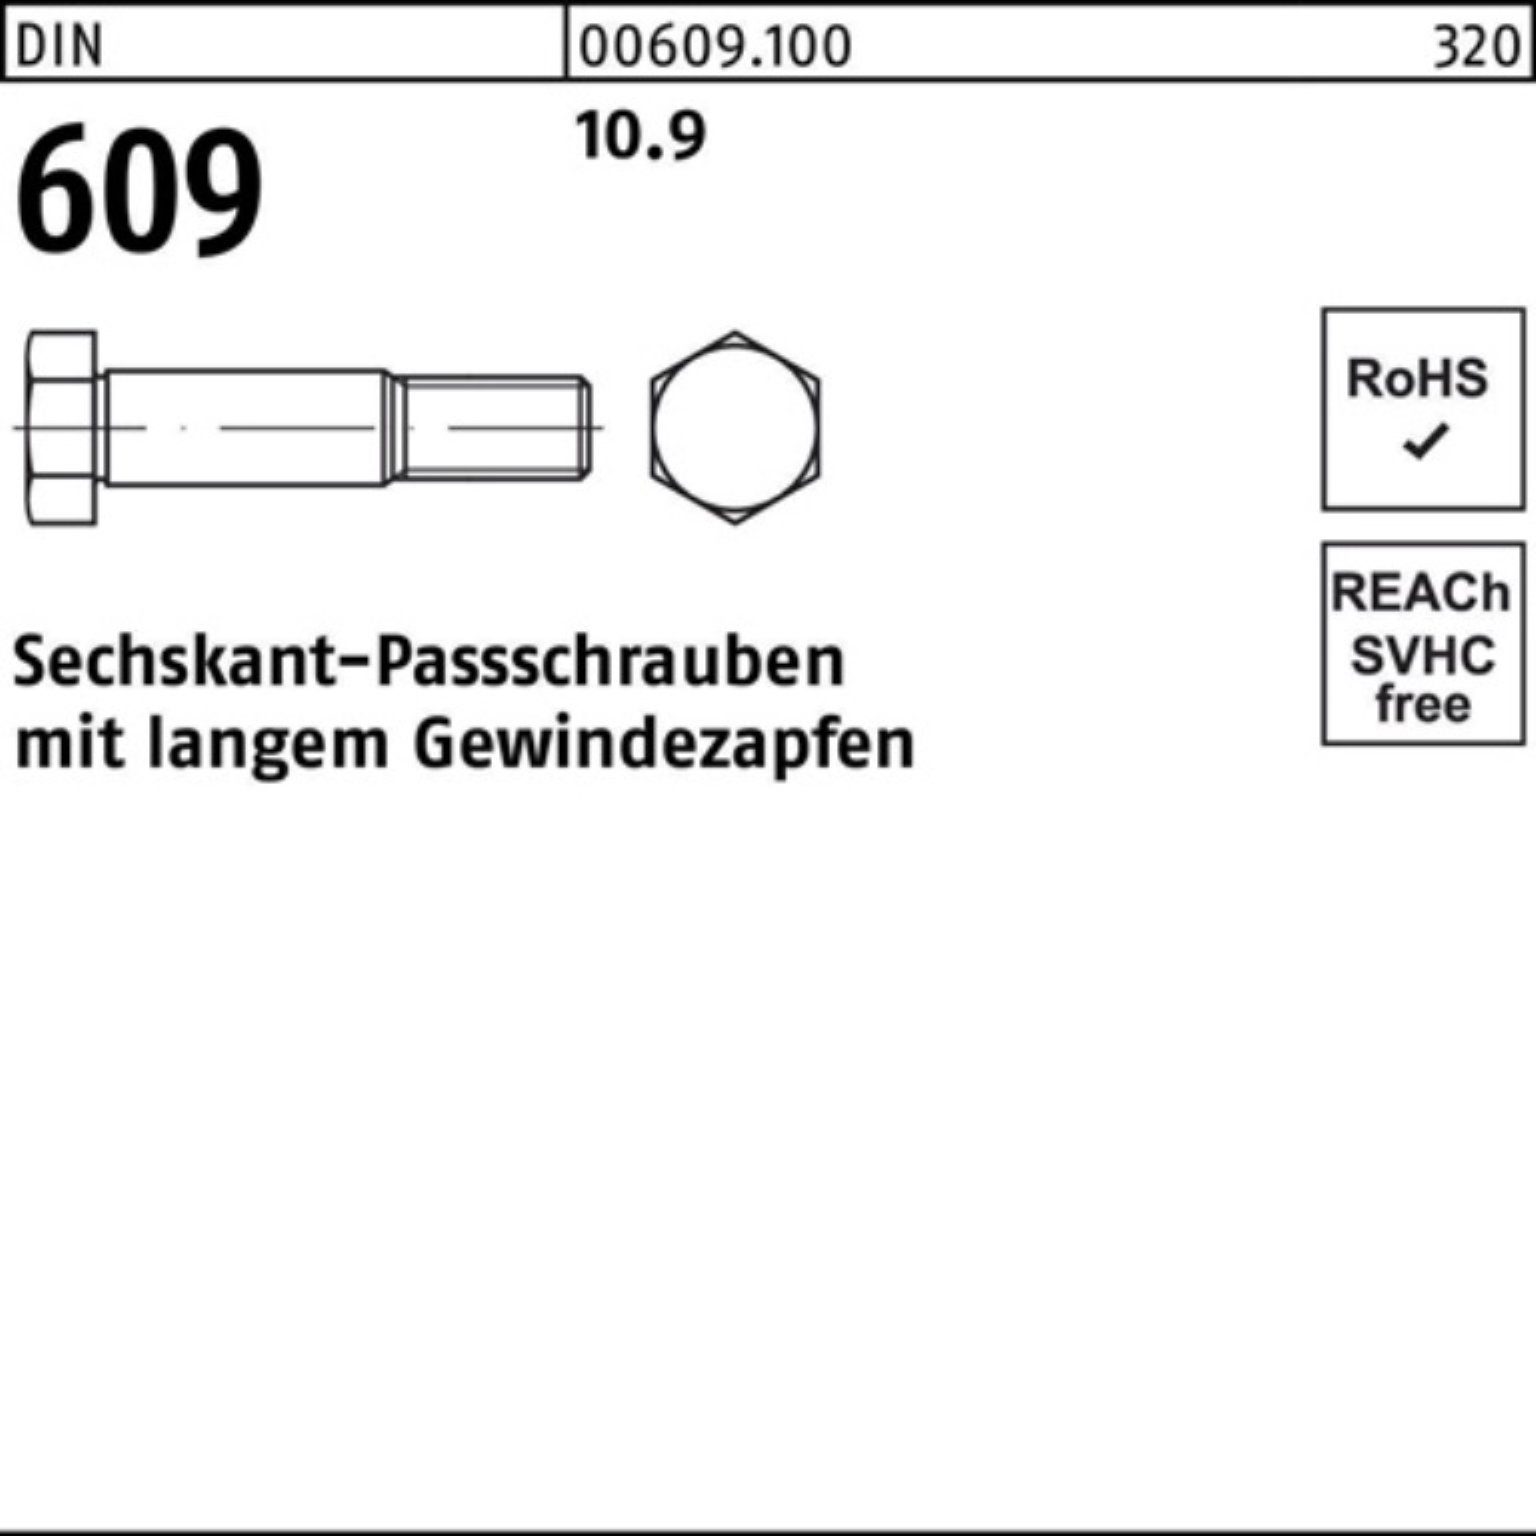 Reyher Schraube 100er Pack Sechskantpassschraube Gewindezapfen langem DIN M10x 609 60